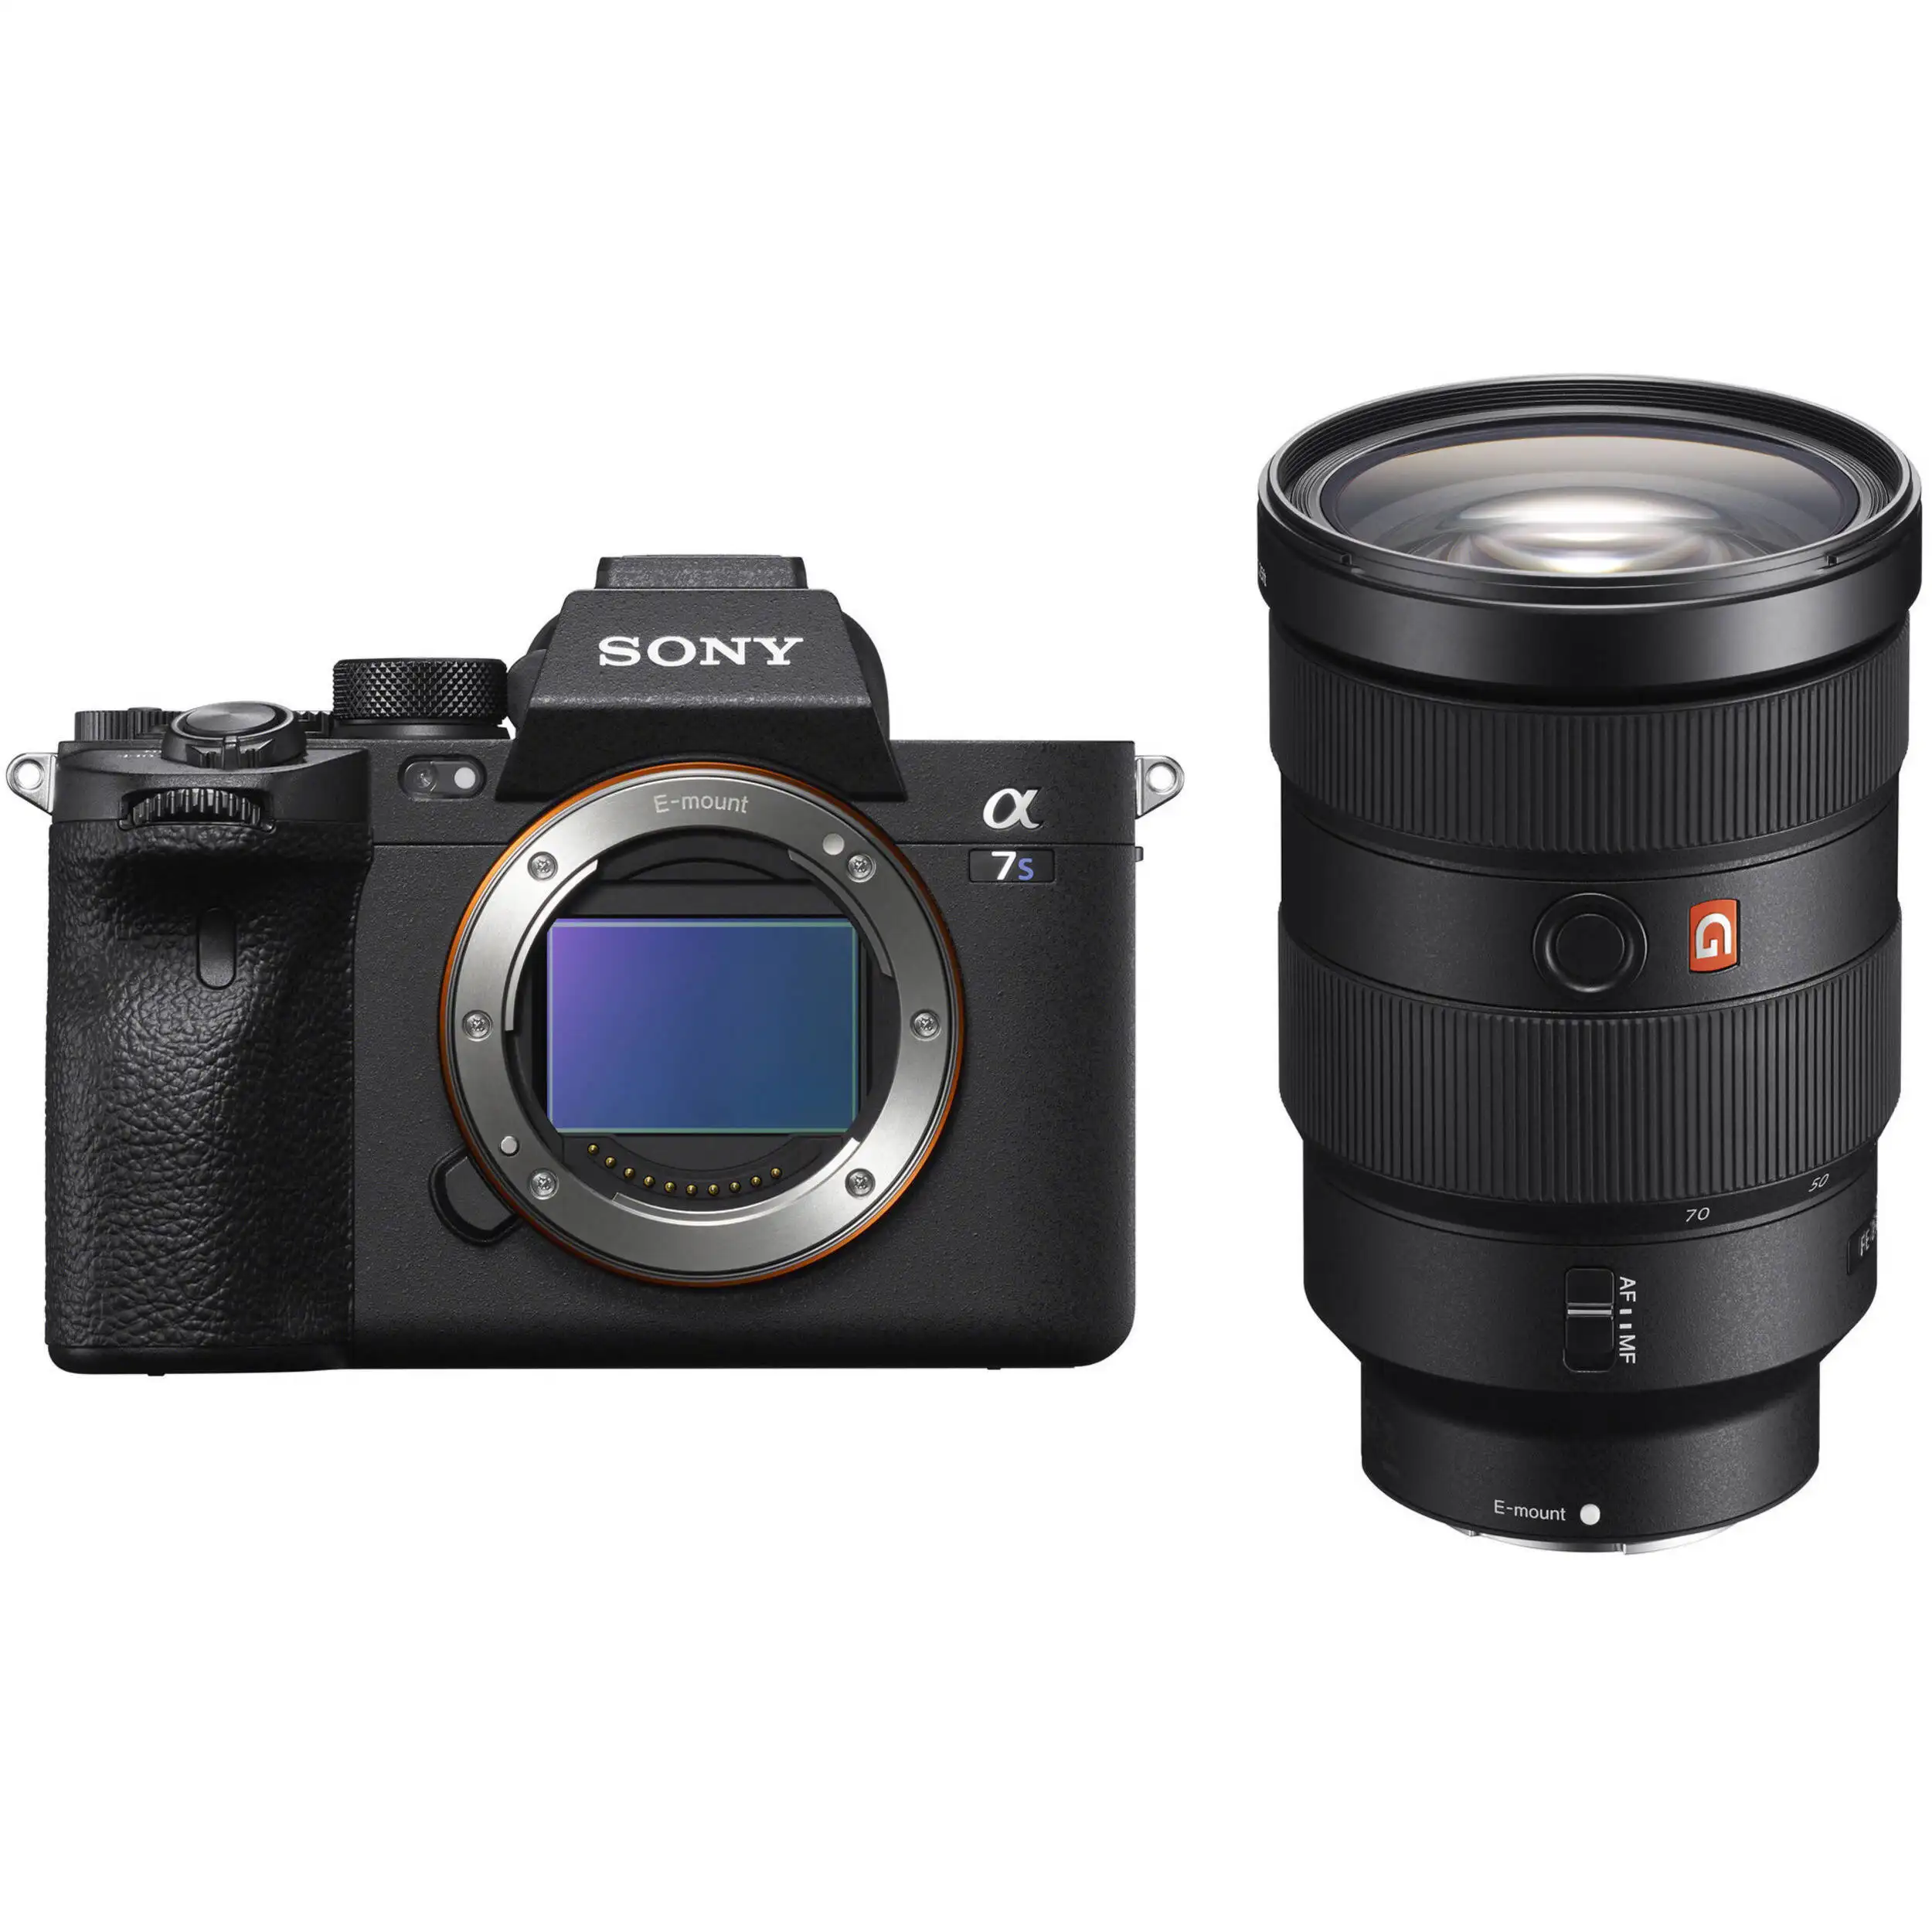 Top Product Promo Verkoop Voor Sony A7s Iii Mirrorless Camera Gloednieuw En Boxed Slr Camera Body + 64Gb pro Video Kit